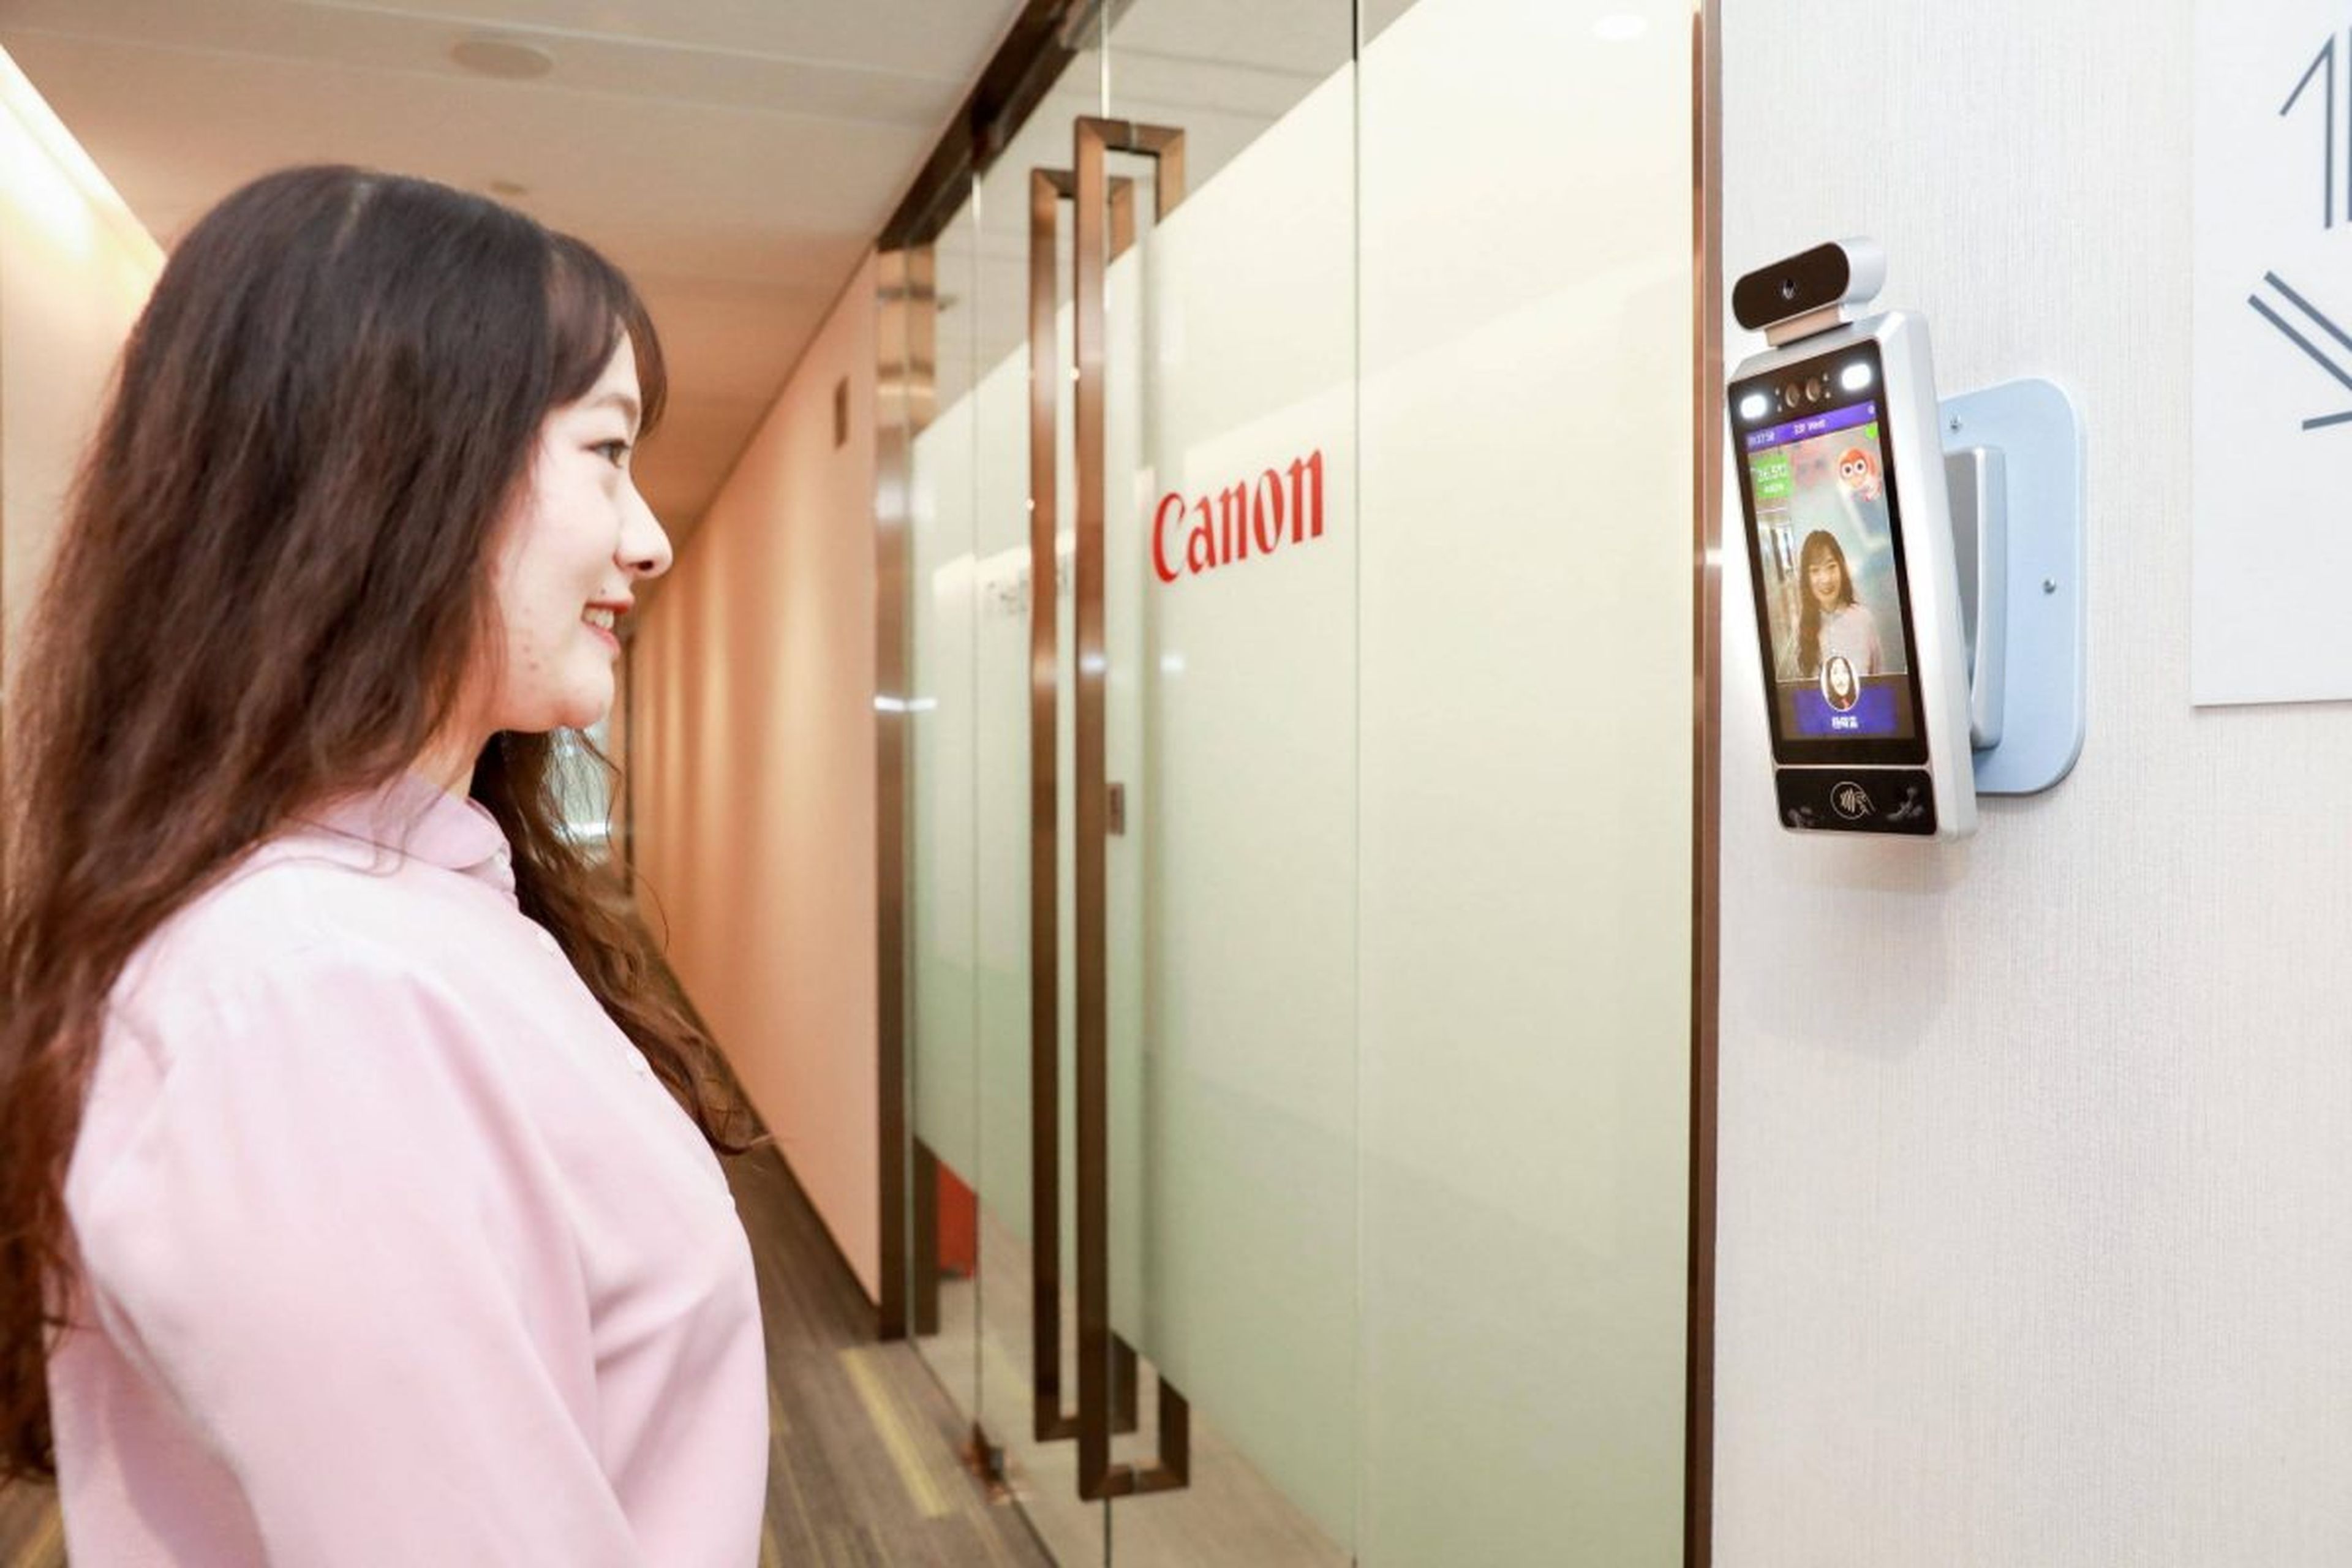 Los empleados de Canon en China han de sonreír si quieren entrar a las oficinas